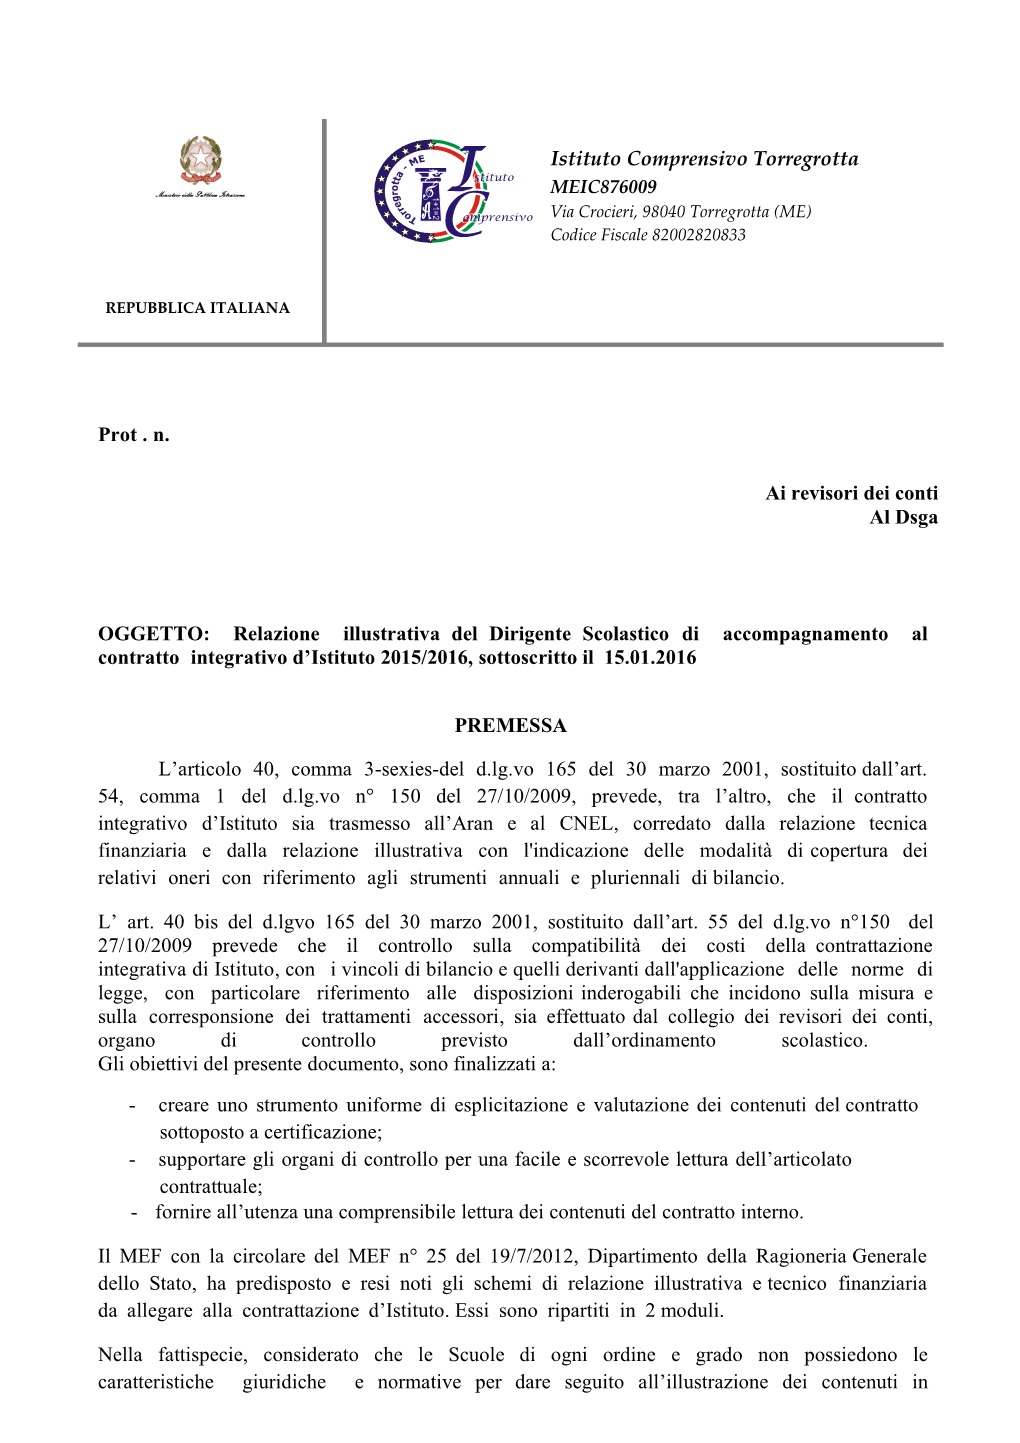 OGGETTO: Relazione Illustrativa Del Dirigente Scolasticodi Accompagnamento Al Contratto